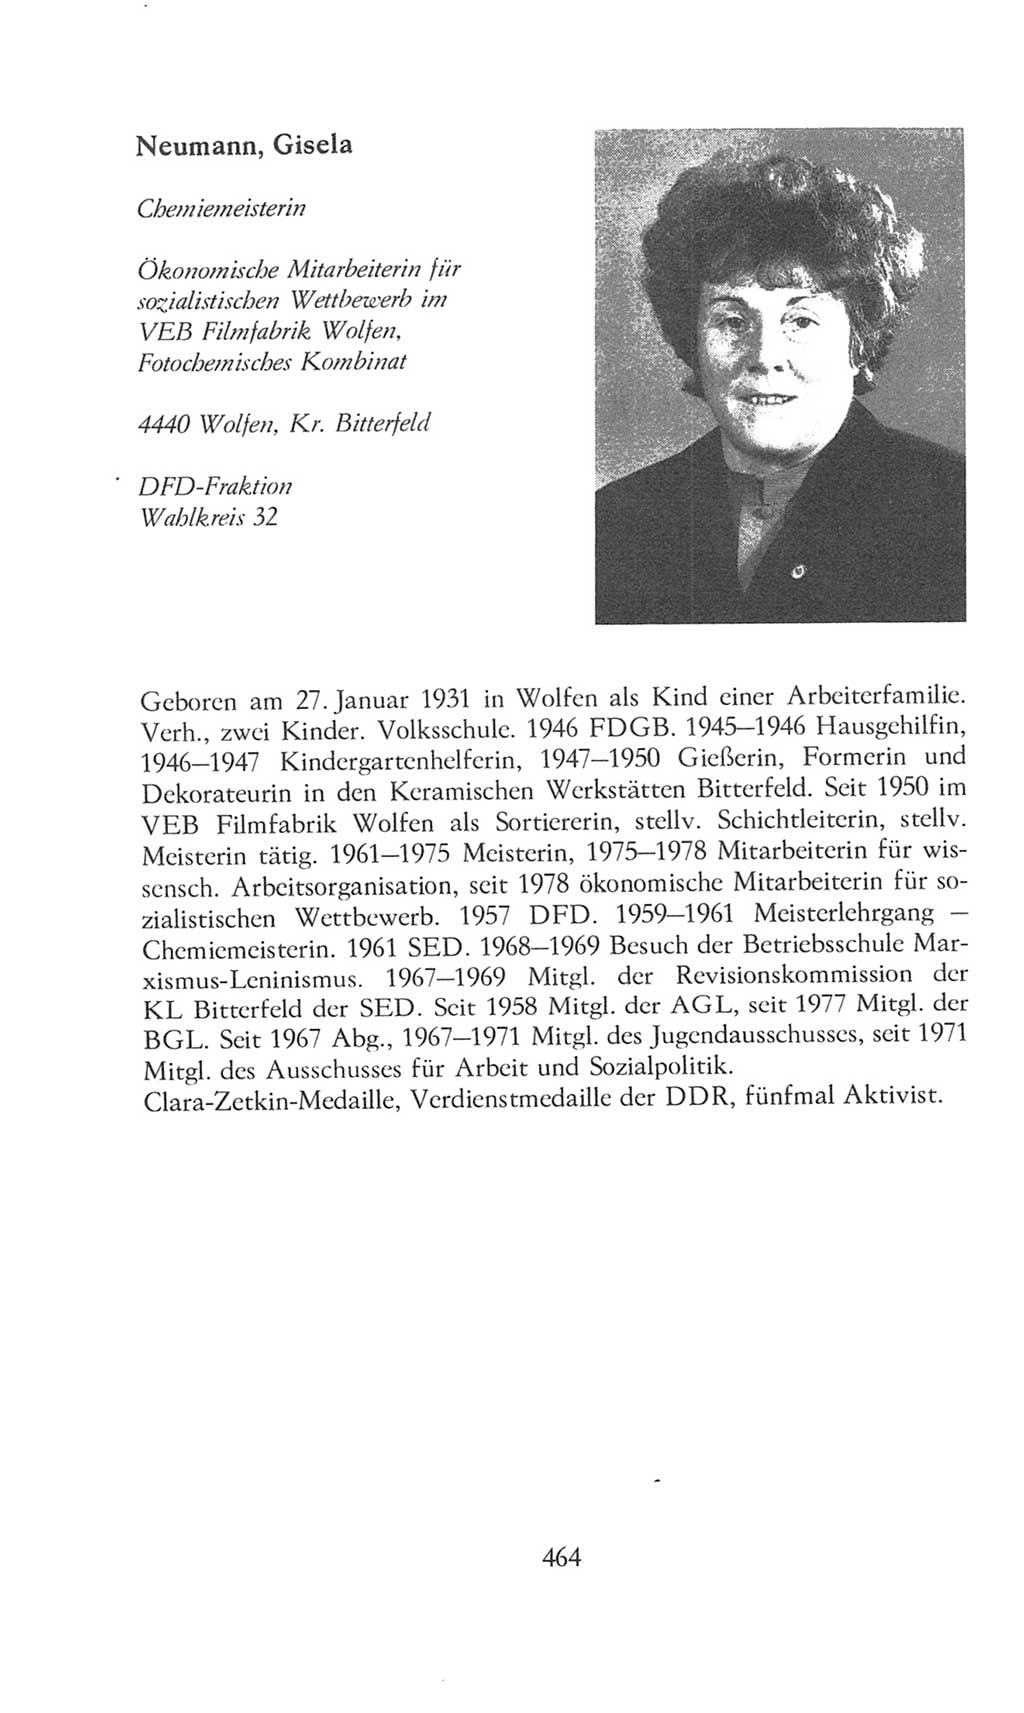 Volkskammer (VK) der Deutschen Demokratischen Republik (DDR), 8. Wahlperiode 1981-1986, Seite 464 (VK. DDR 8. WP. 1981-1986, S. 464)